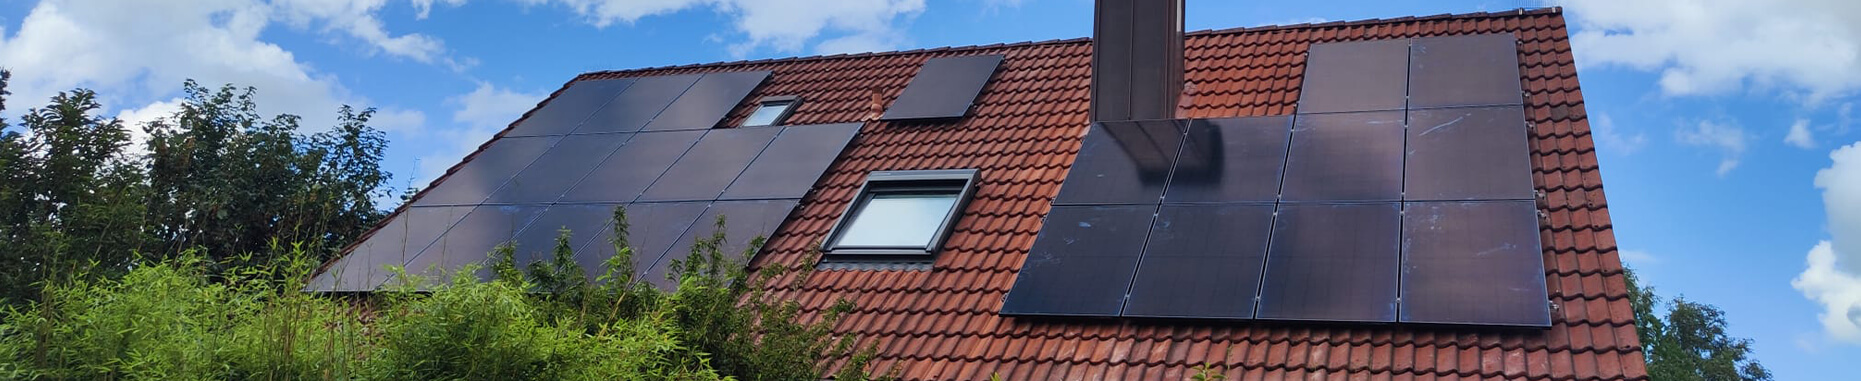 Zimmerei Nordmann Solaranlagen auf einem Dach